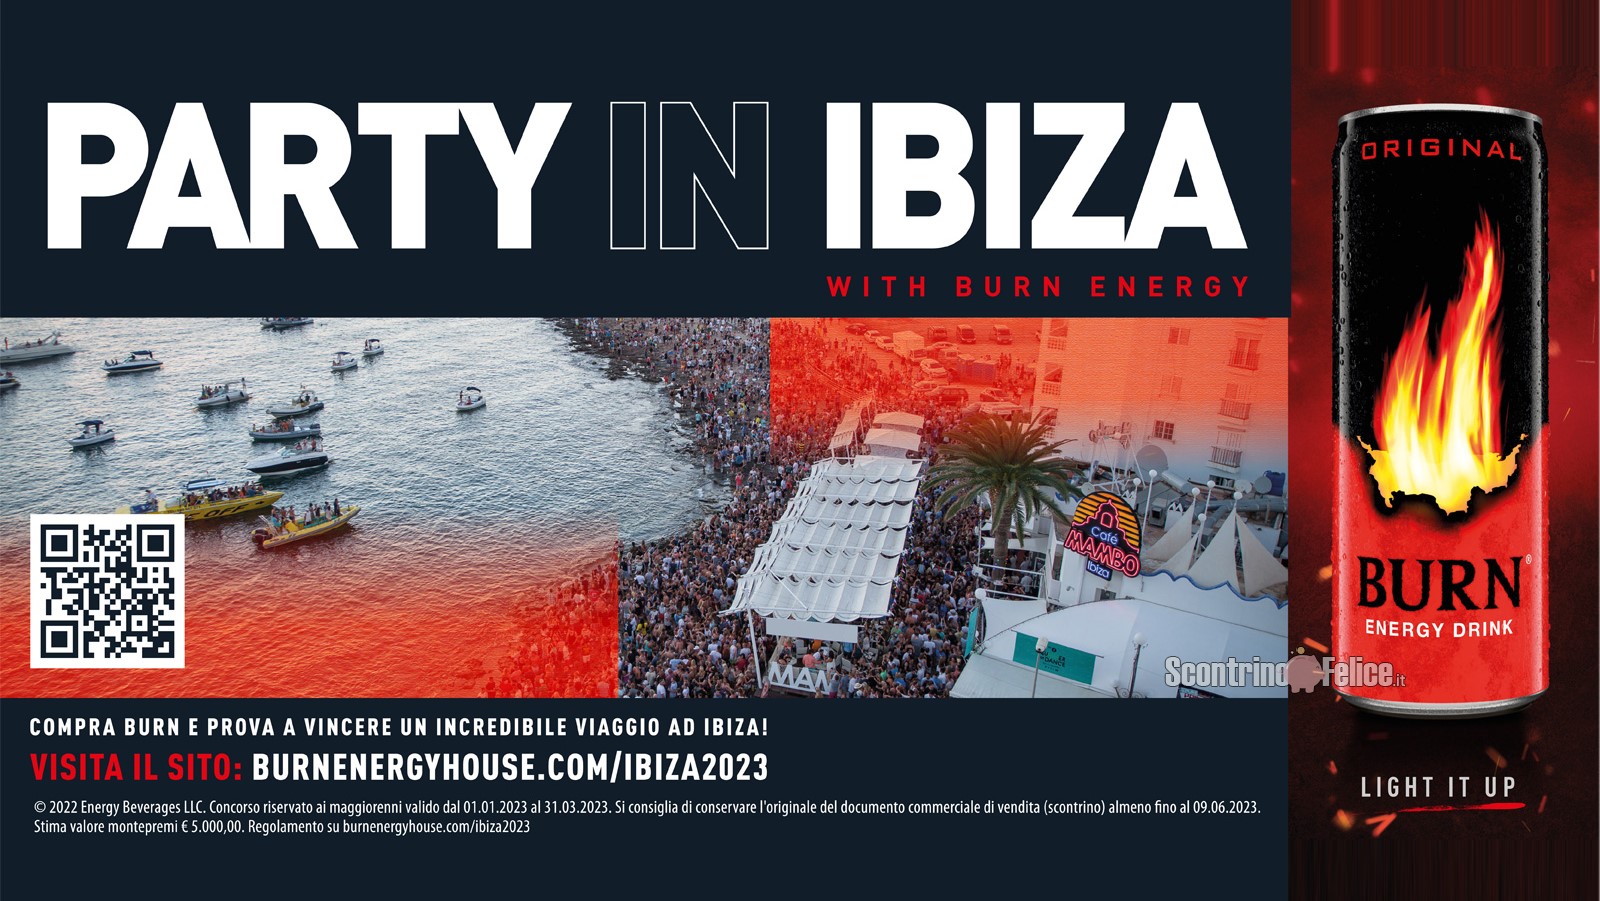 Concorso Burn Energy Drink: vinci un viaggio a Ibiza